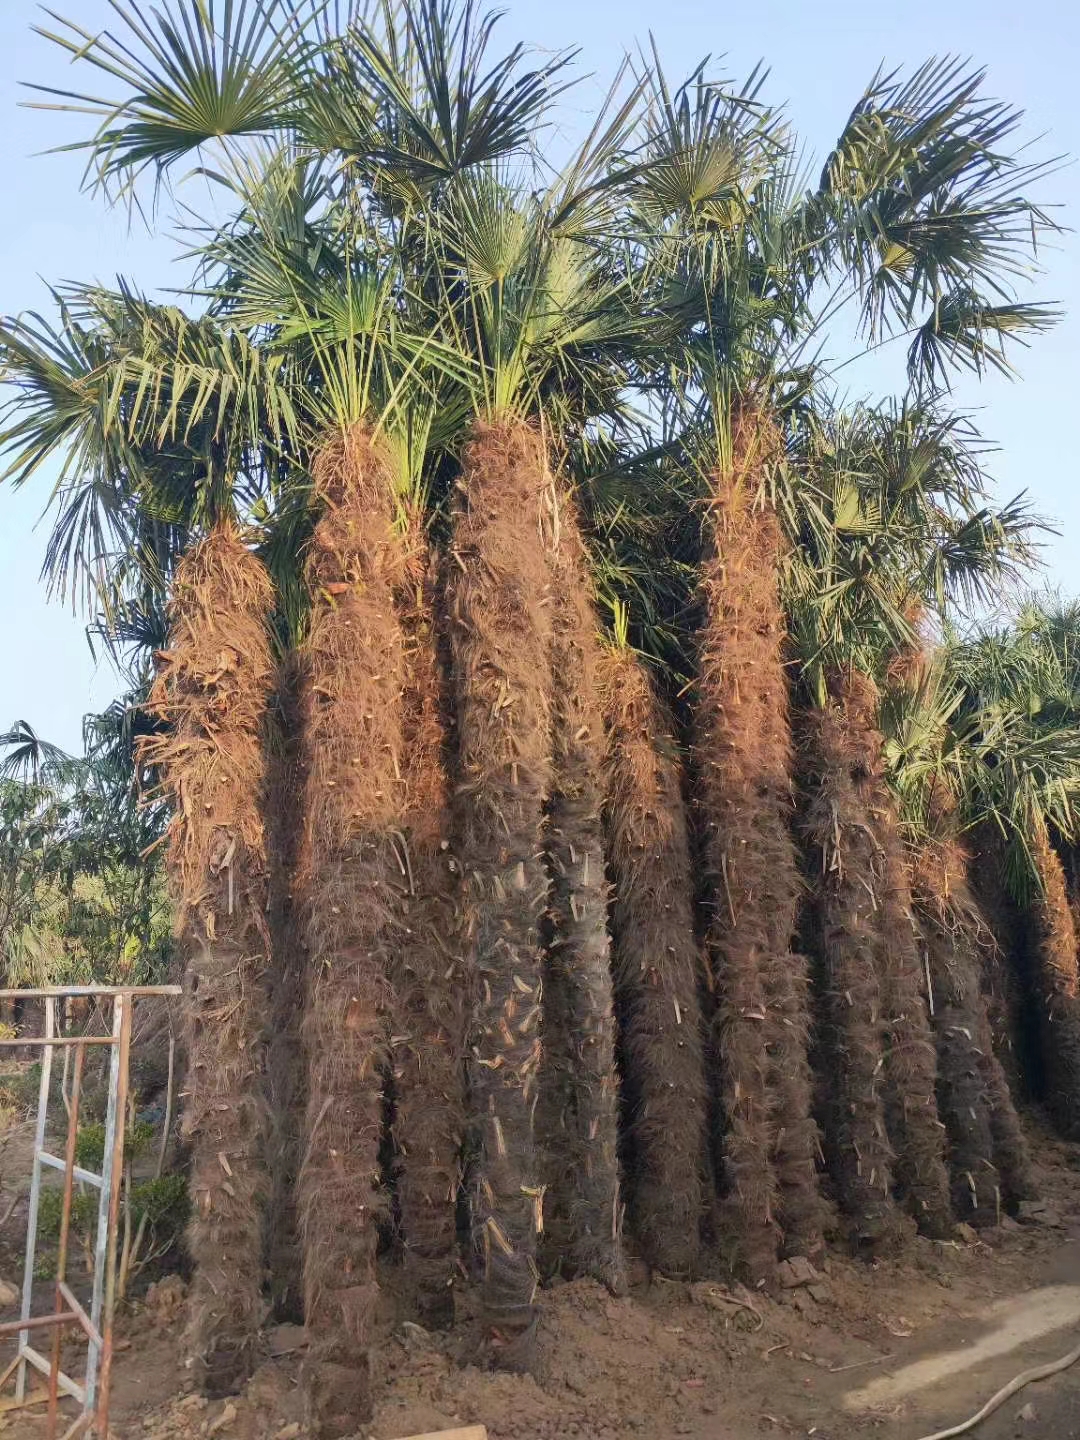 棕榈树 (7).jpg